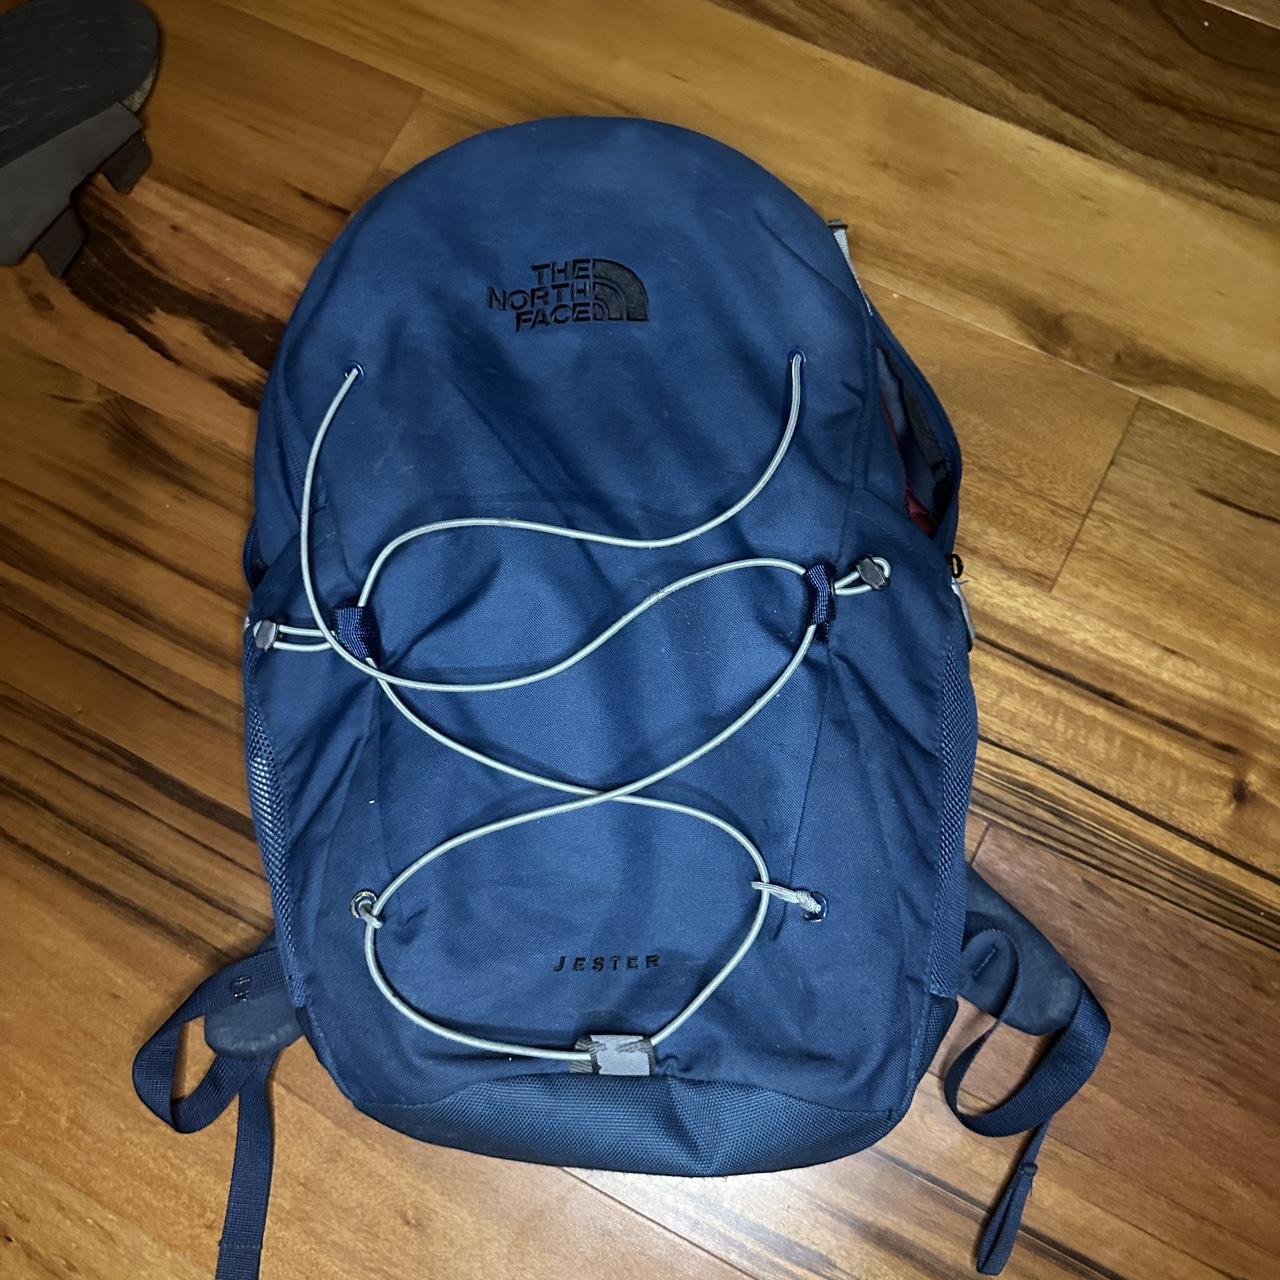 blue jester north face backpack 💙 pre-loved still in... - Depop